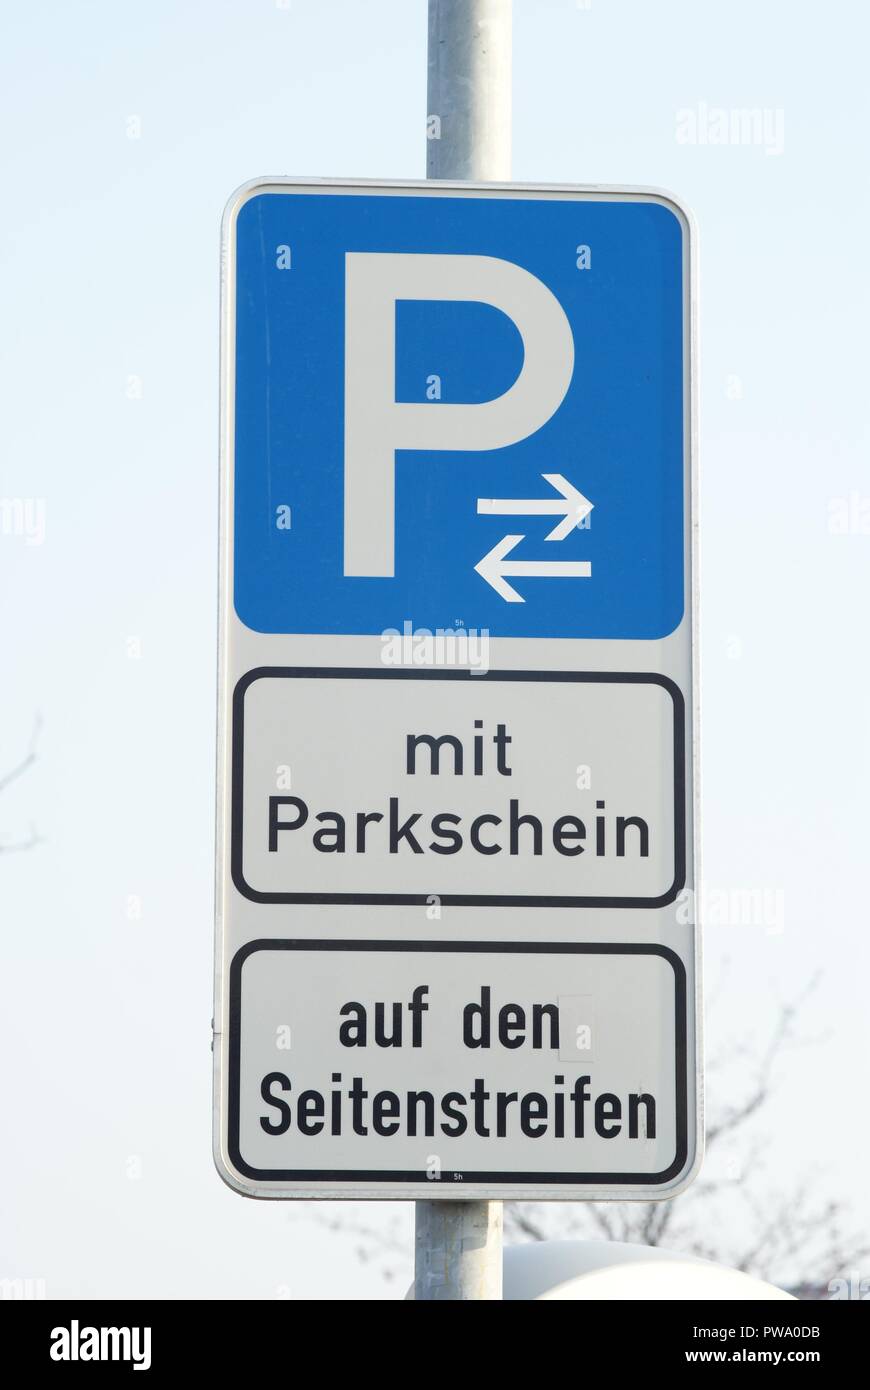 Parking sign mit Parkschein auf dem Seitenstreifen Parksituation à Berlin  Photo Stock - Alamy